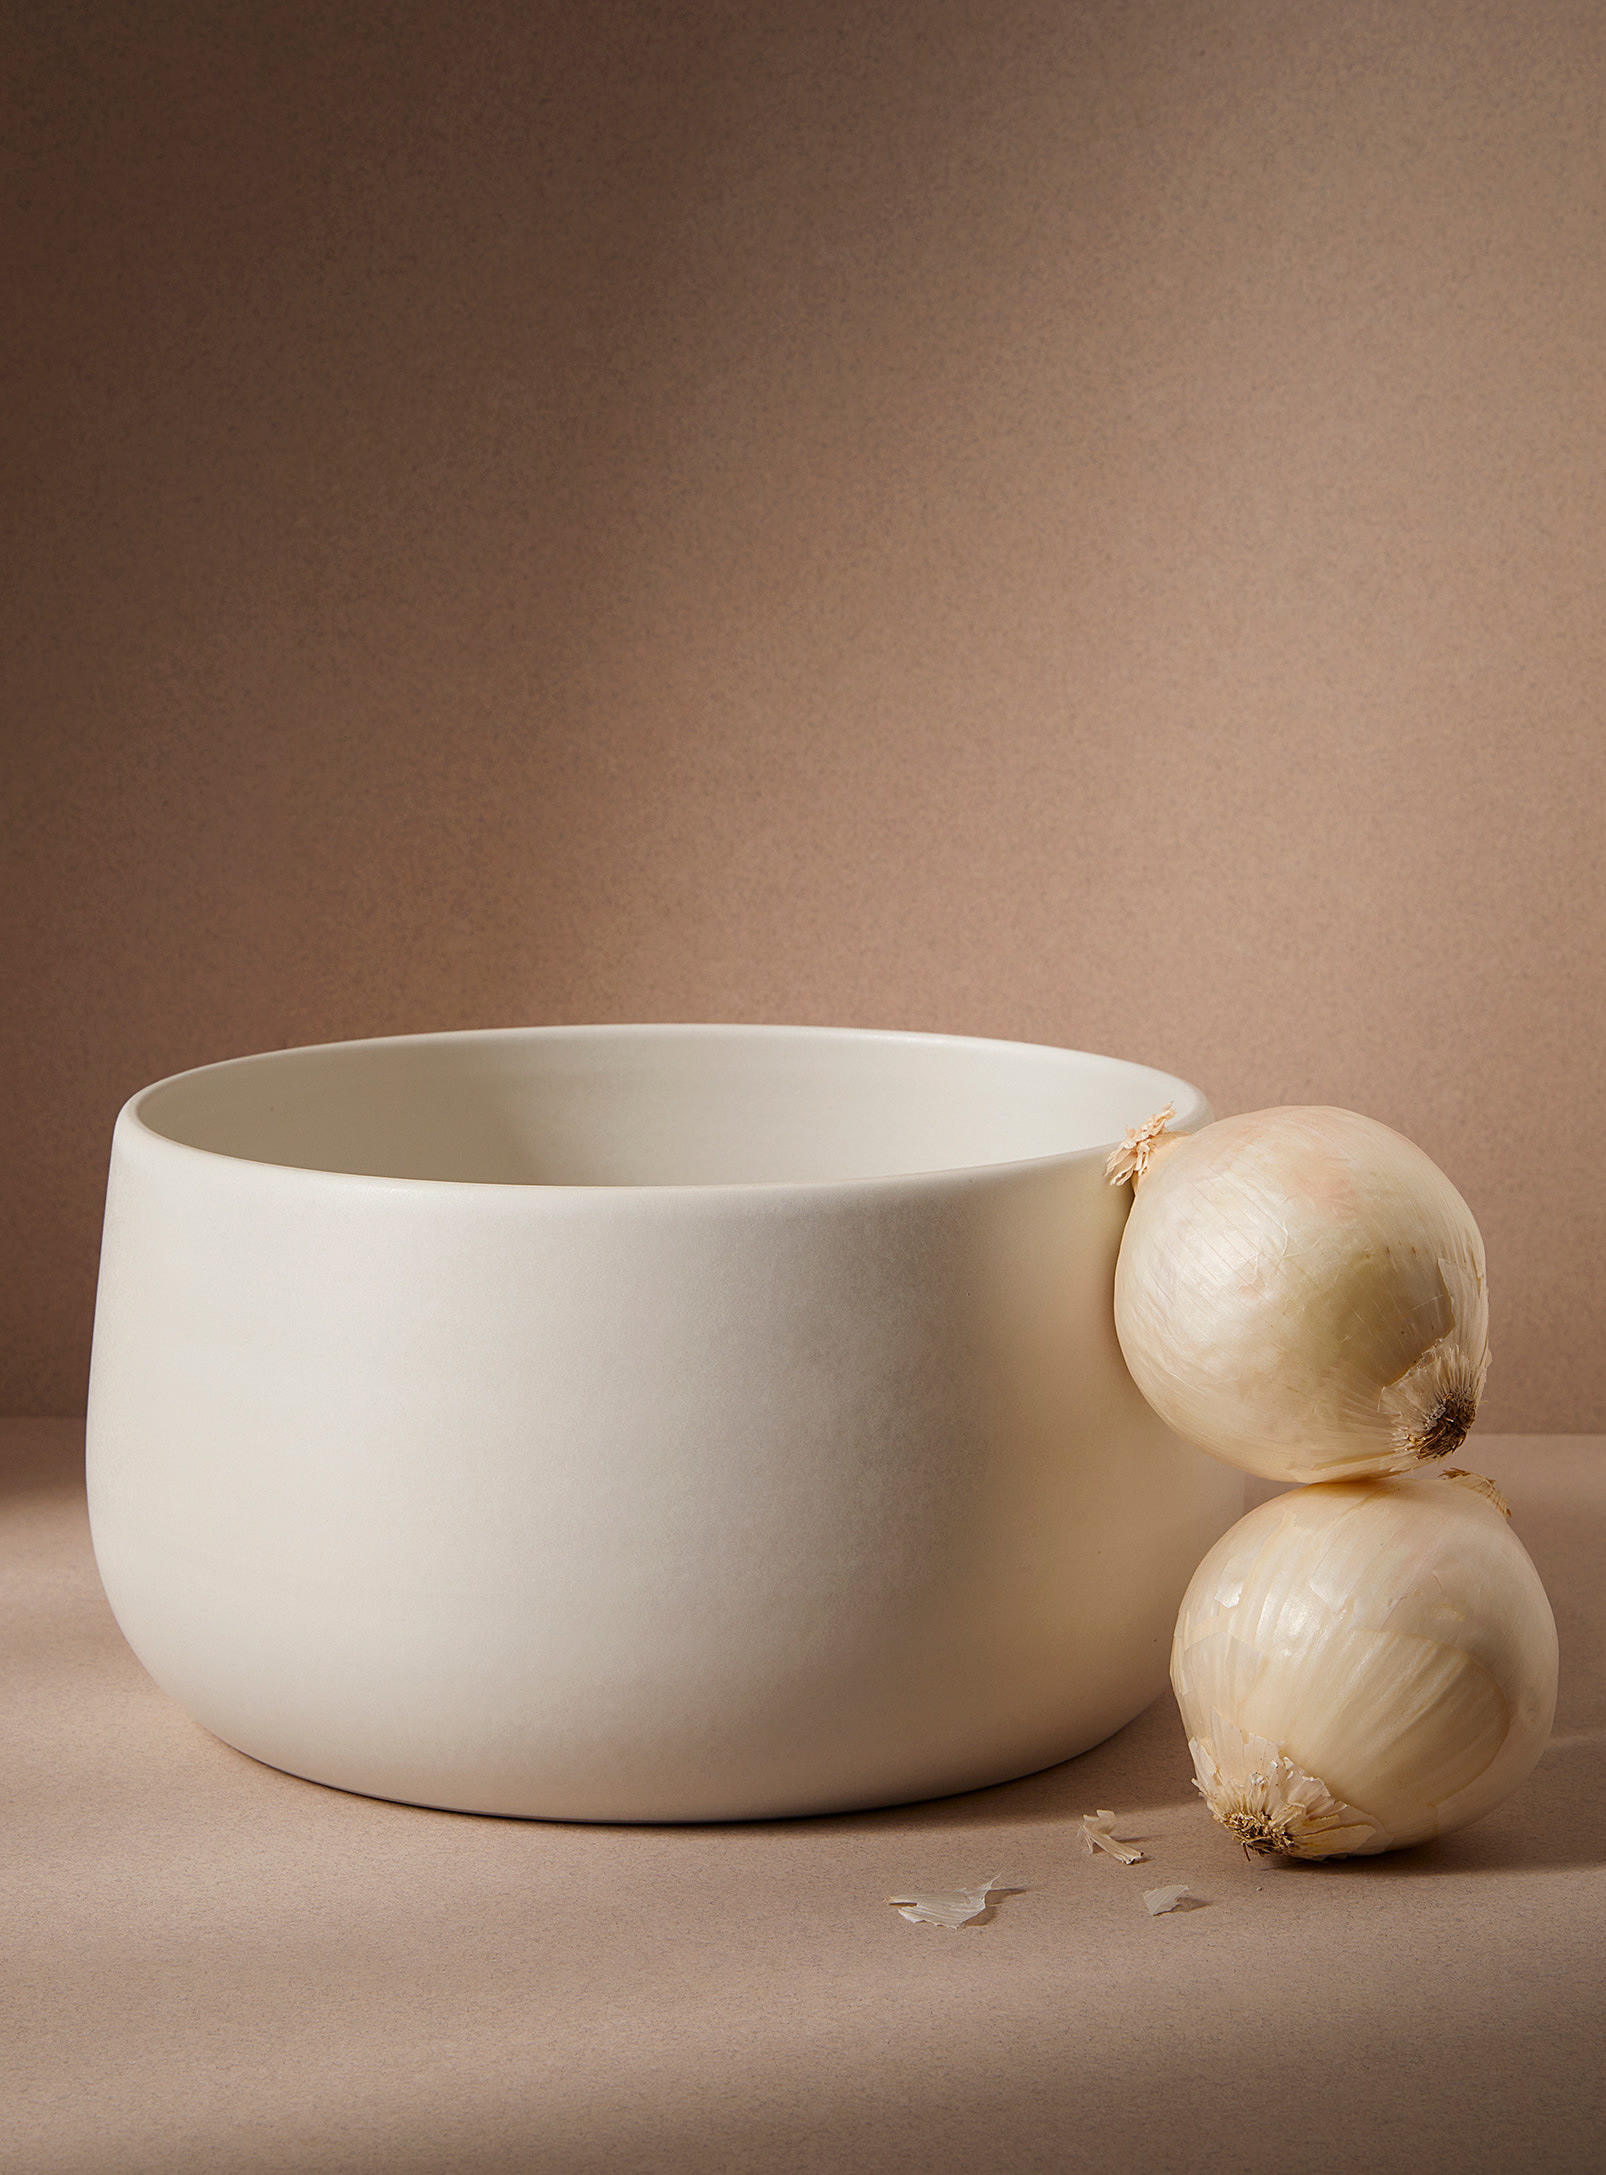 Gharyan Stoneware Serving Bowl In White